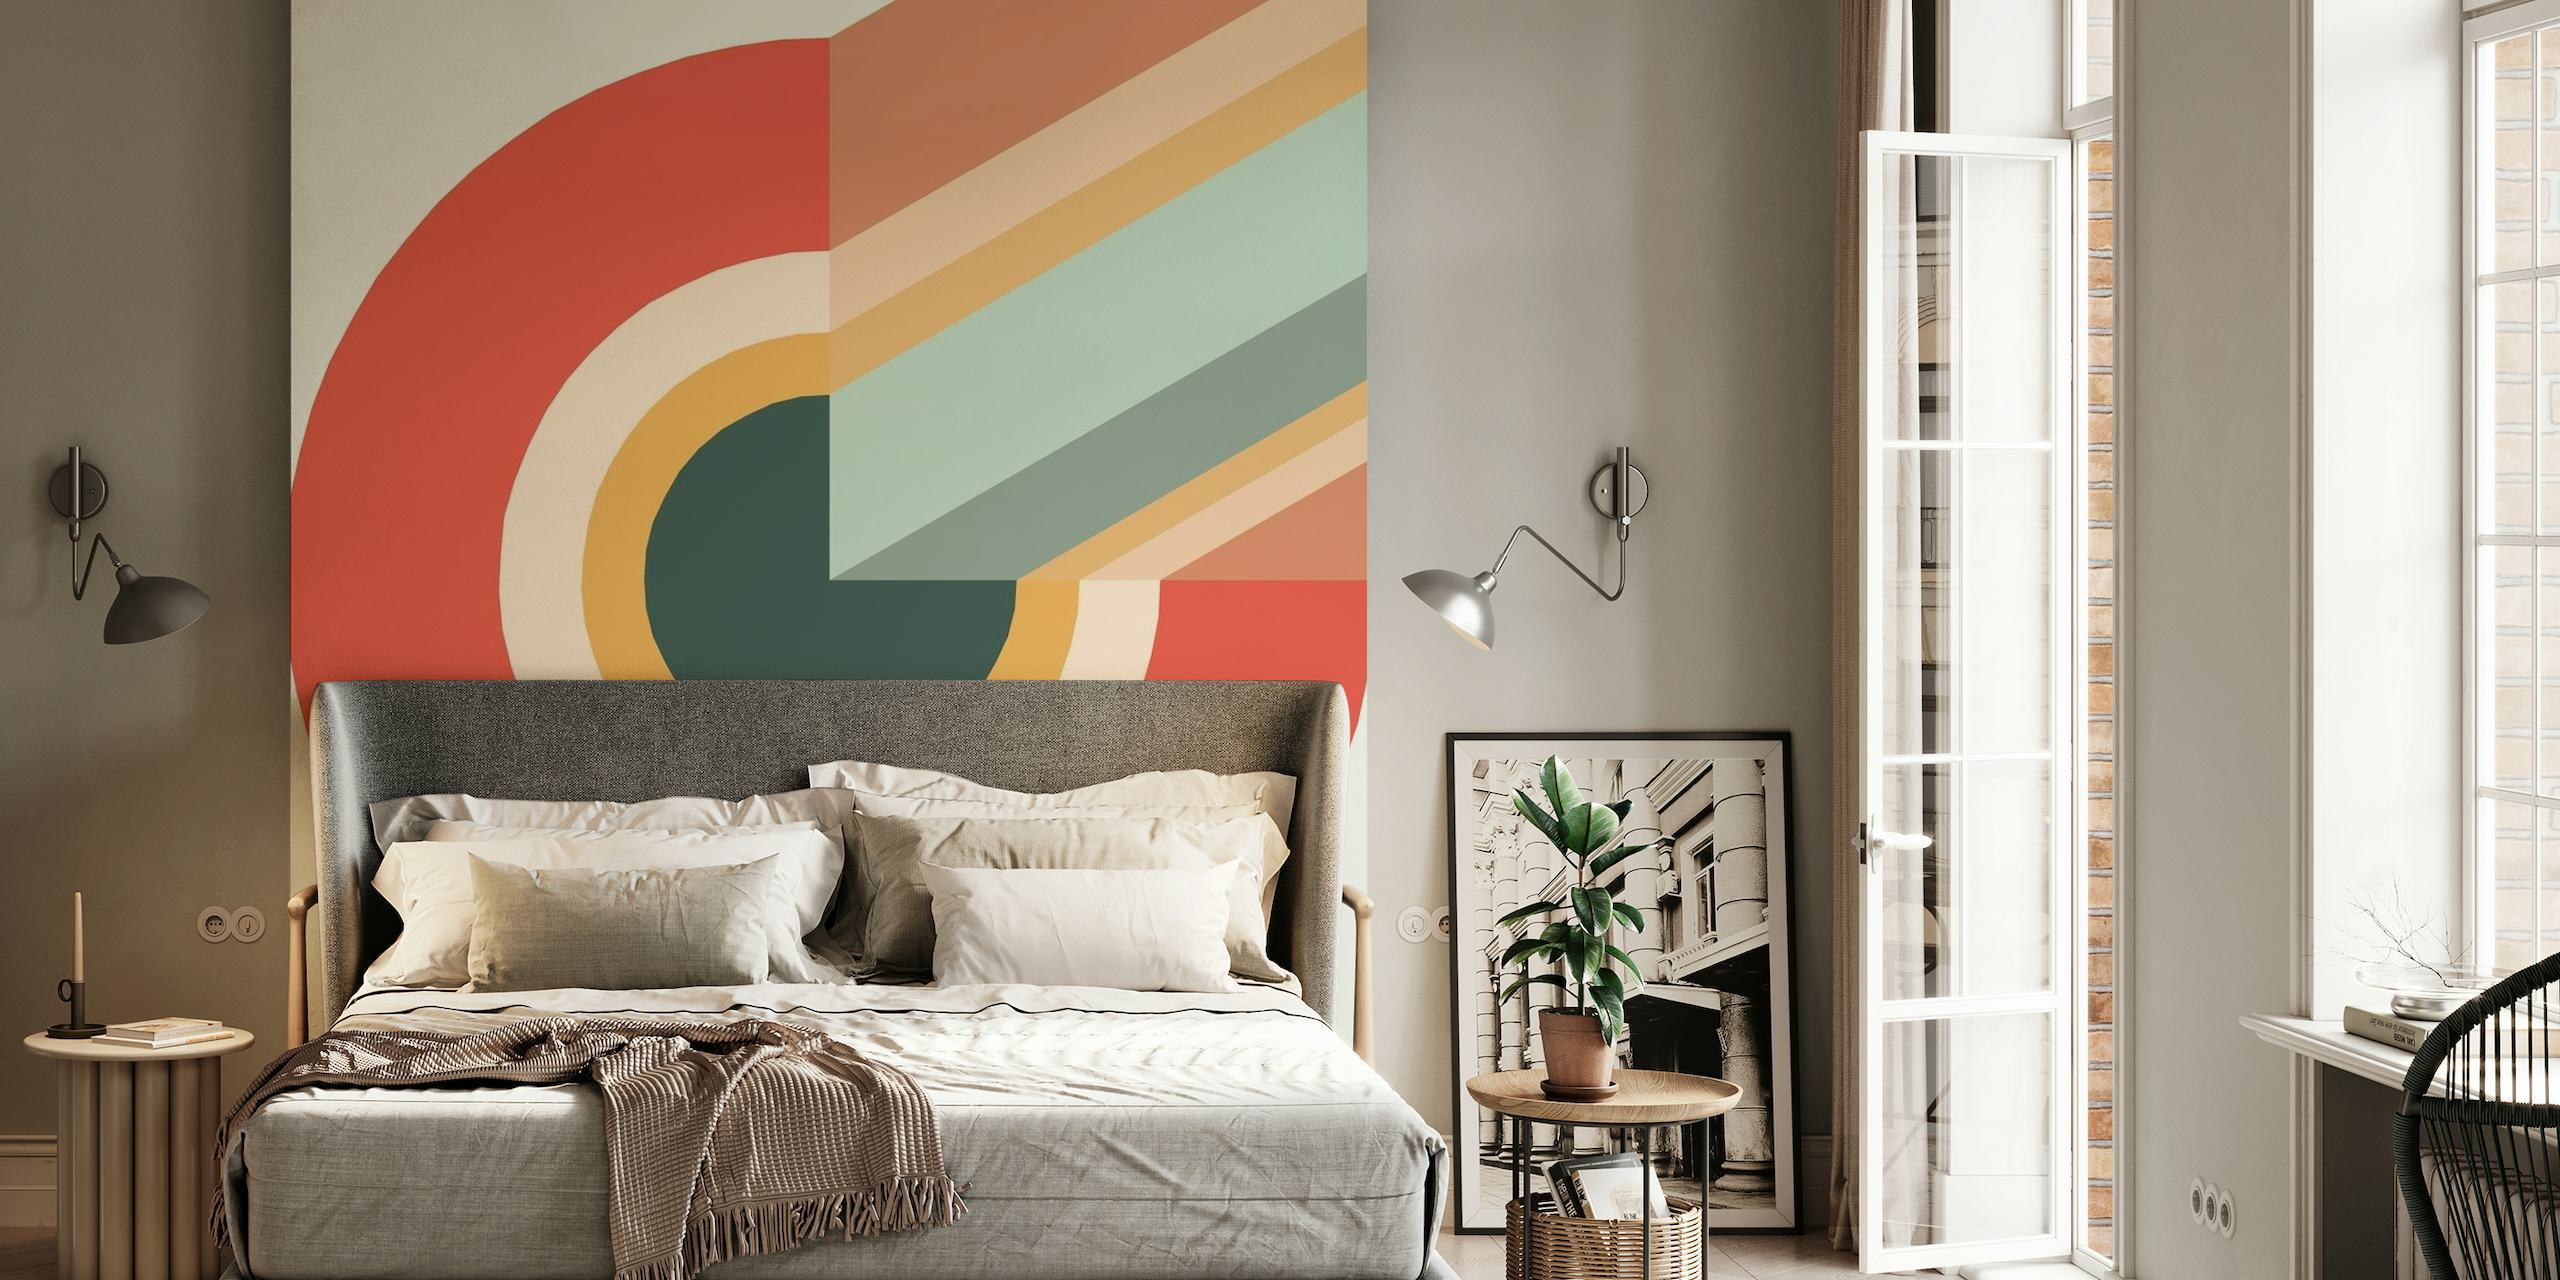 Mural de pared con forma de remolino abstracto con una combinación armoniosa de colores cálidos y fríos